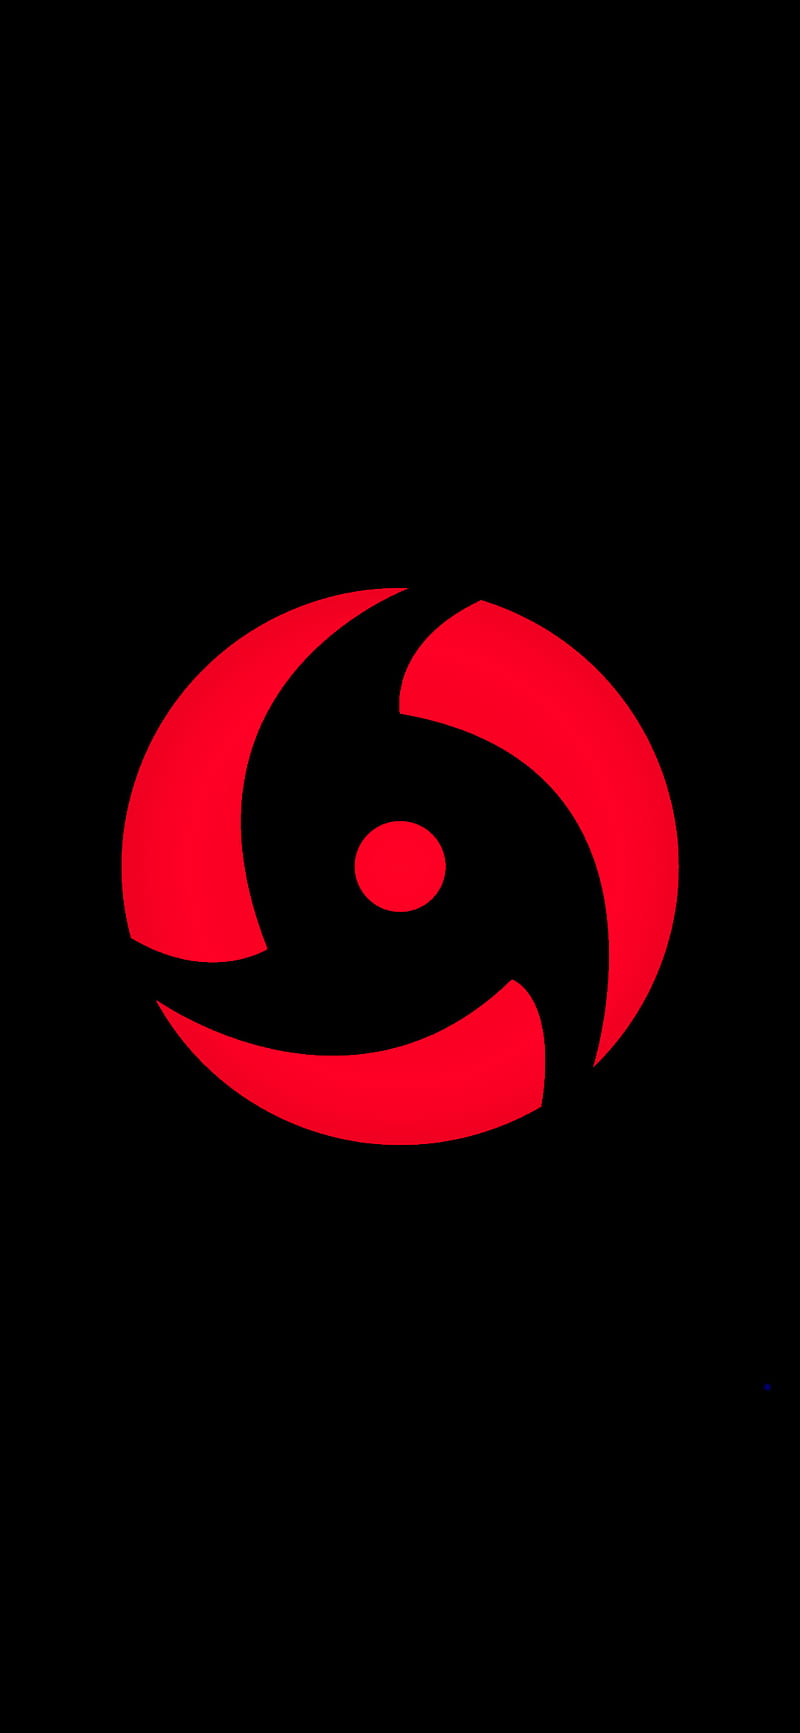 Itachi's Mangekyo , eye, symbol, HD phone wallpaper